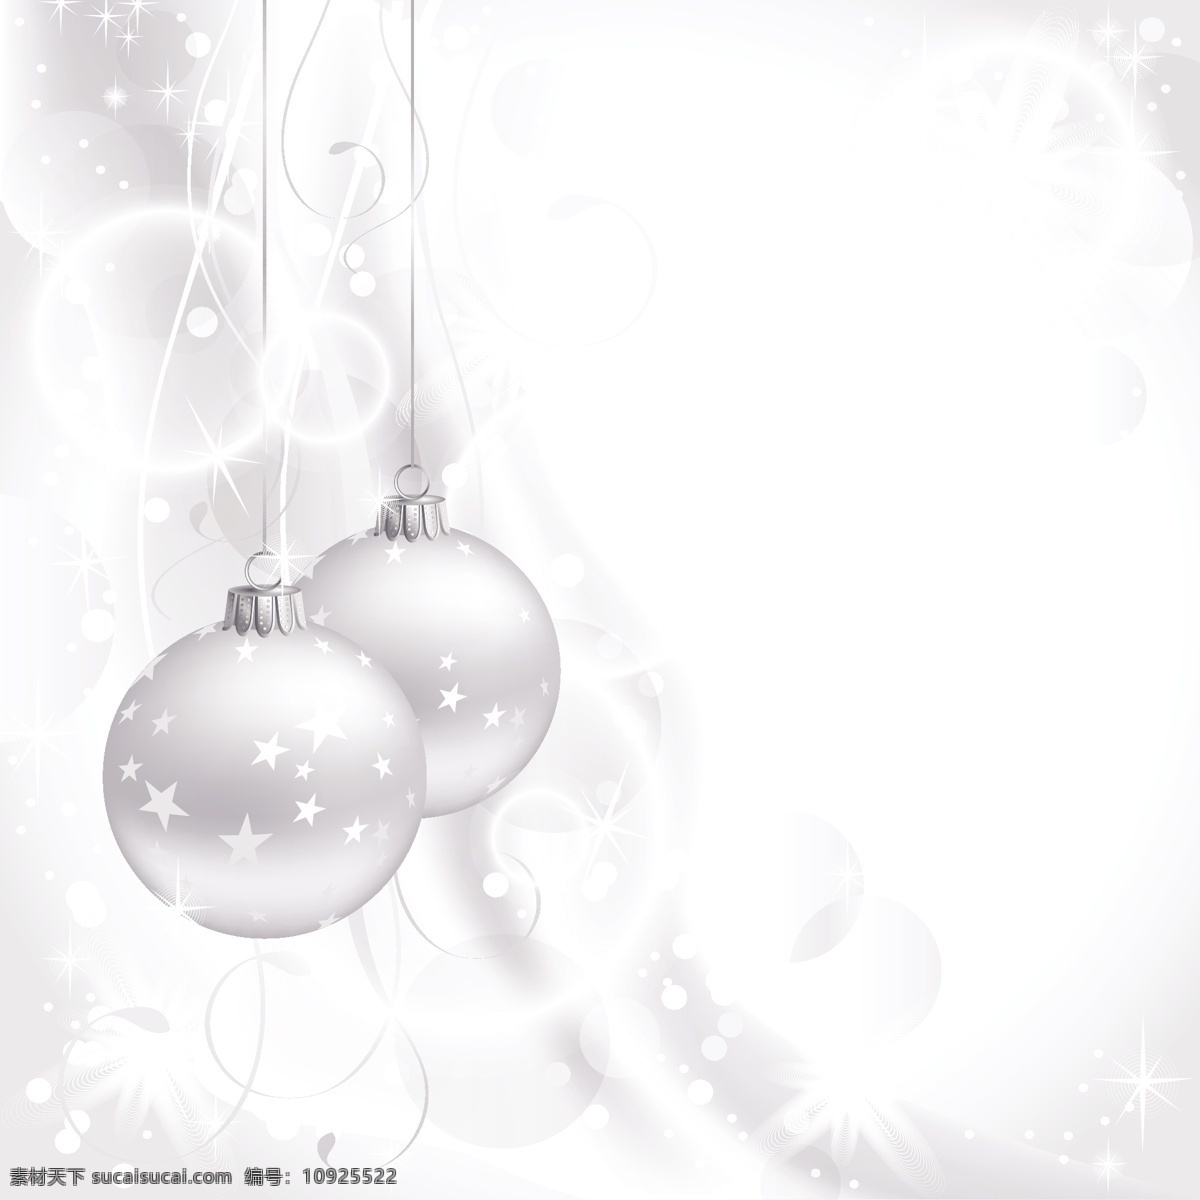 圣诞节 水晶 吊球 矢量 背景 彩球 黄色 矢量素材 透明 星星 雪花 白球 伊面 矢量图 其他矢量图